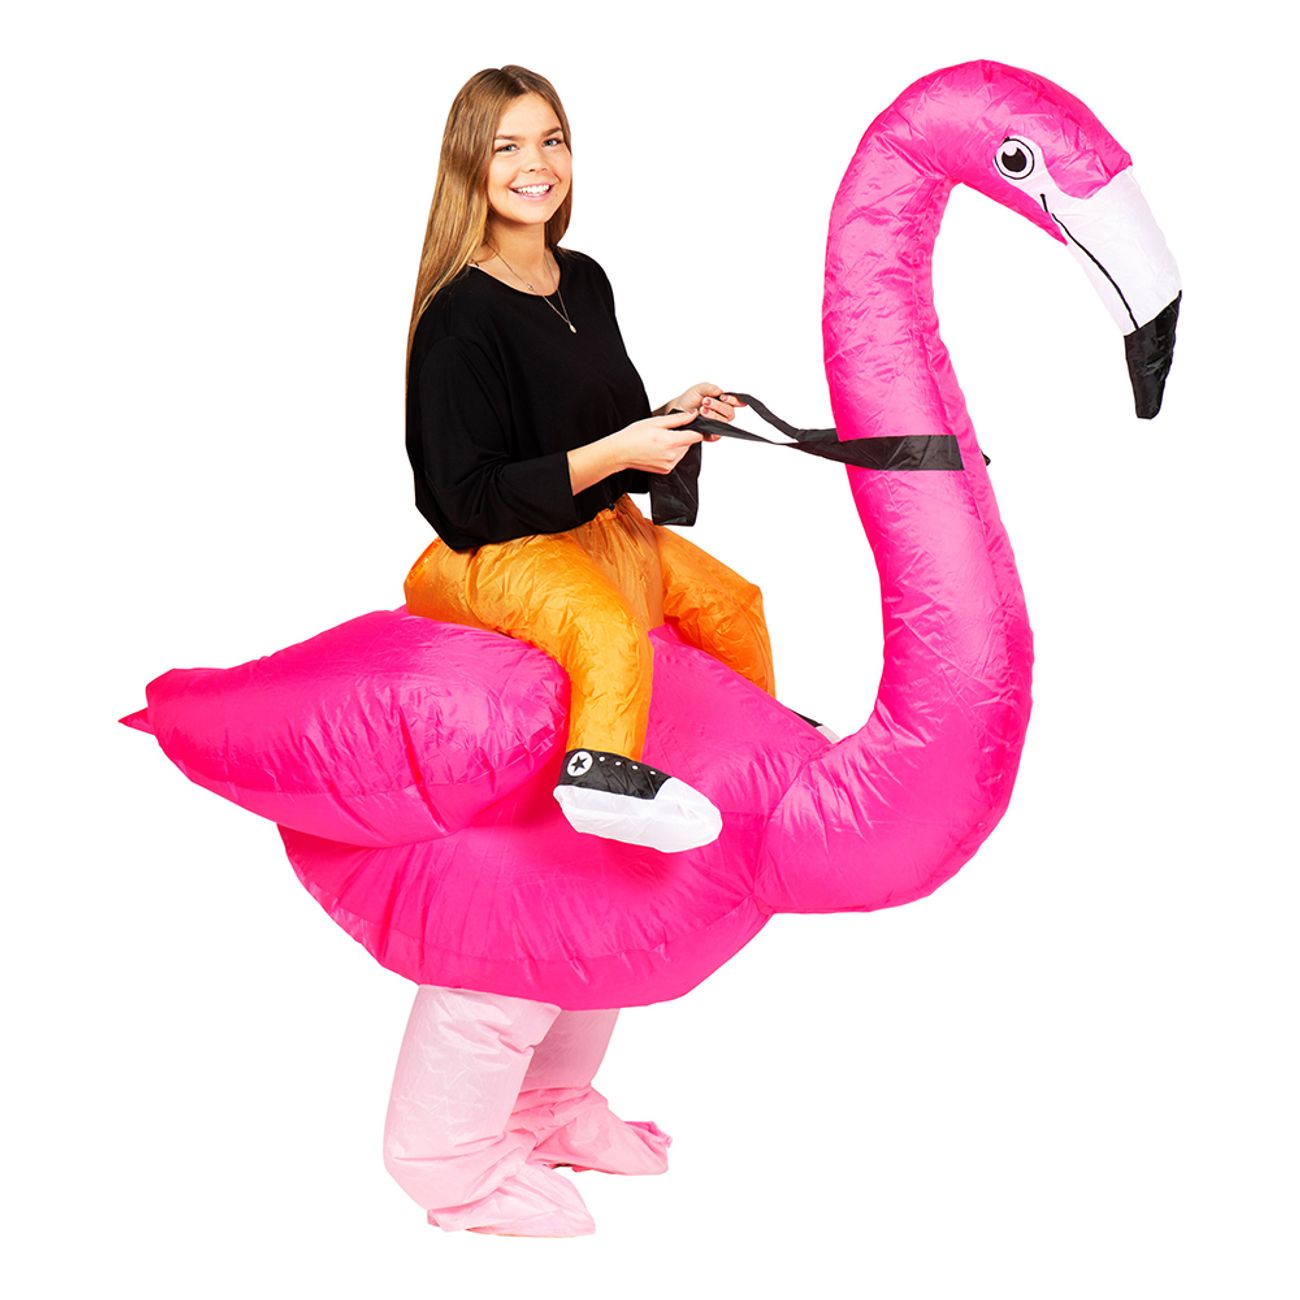 græs Ringlet fingeraftryk Oppustelig Ridende Flamingo Kostume | Partykungen